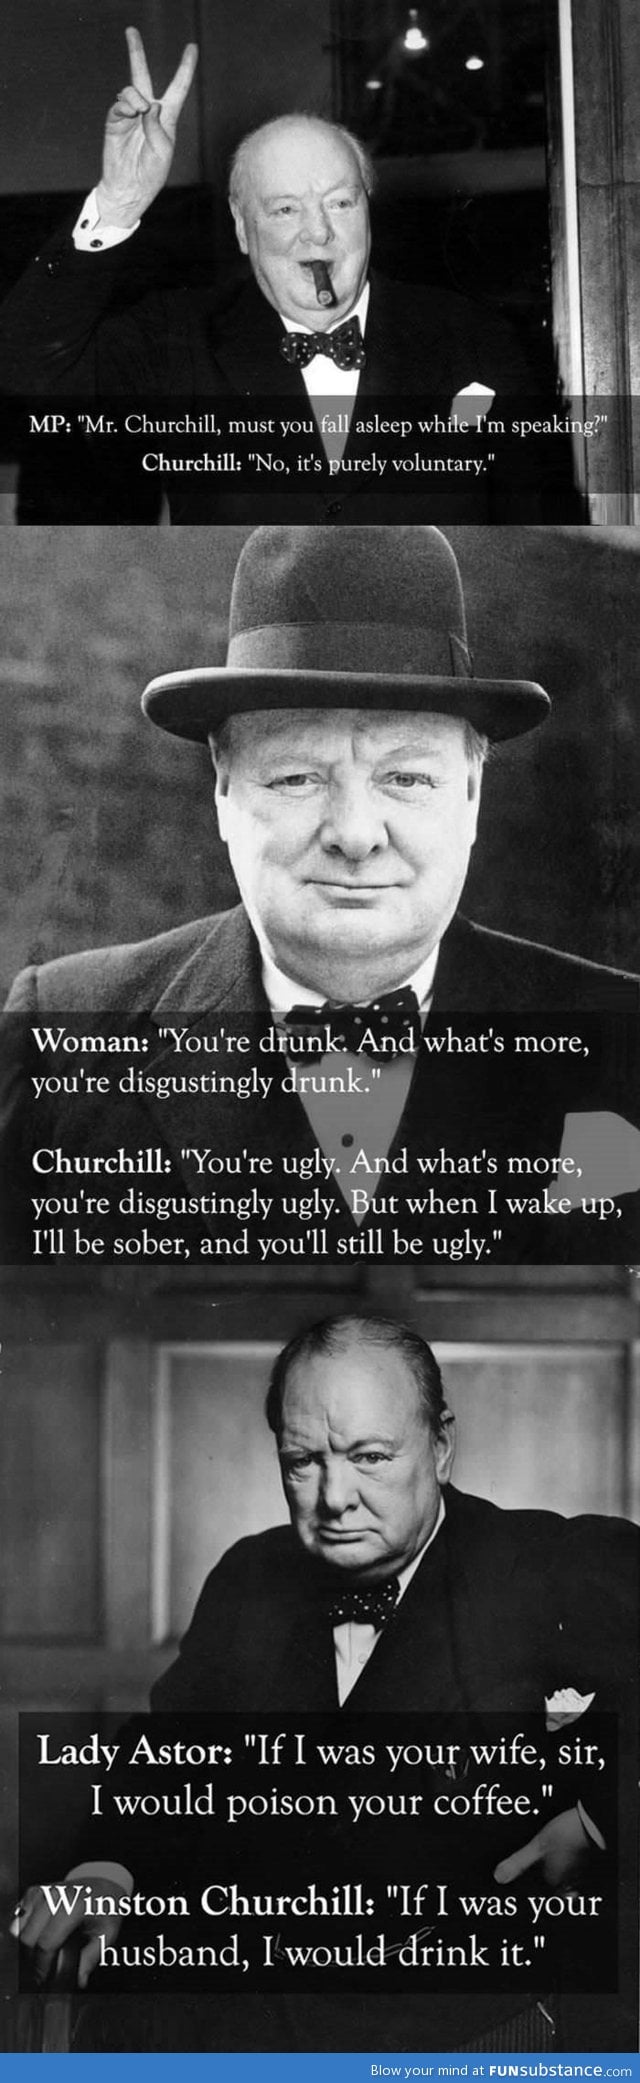 Churchill was a boss